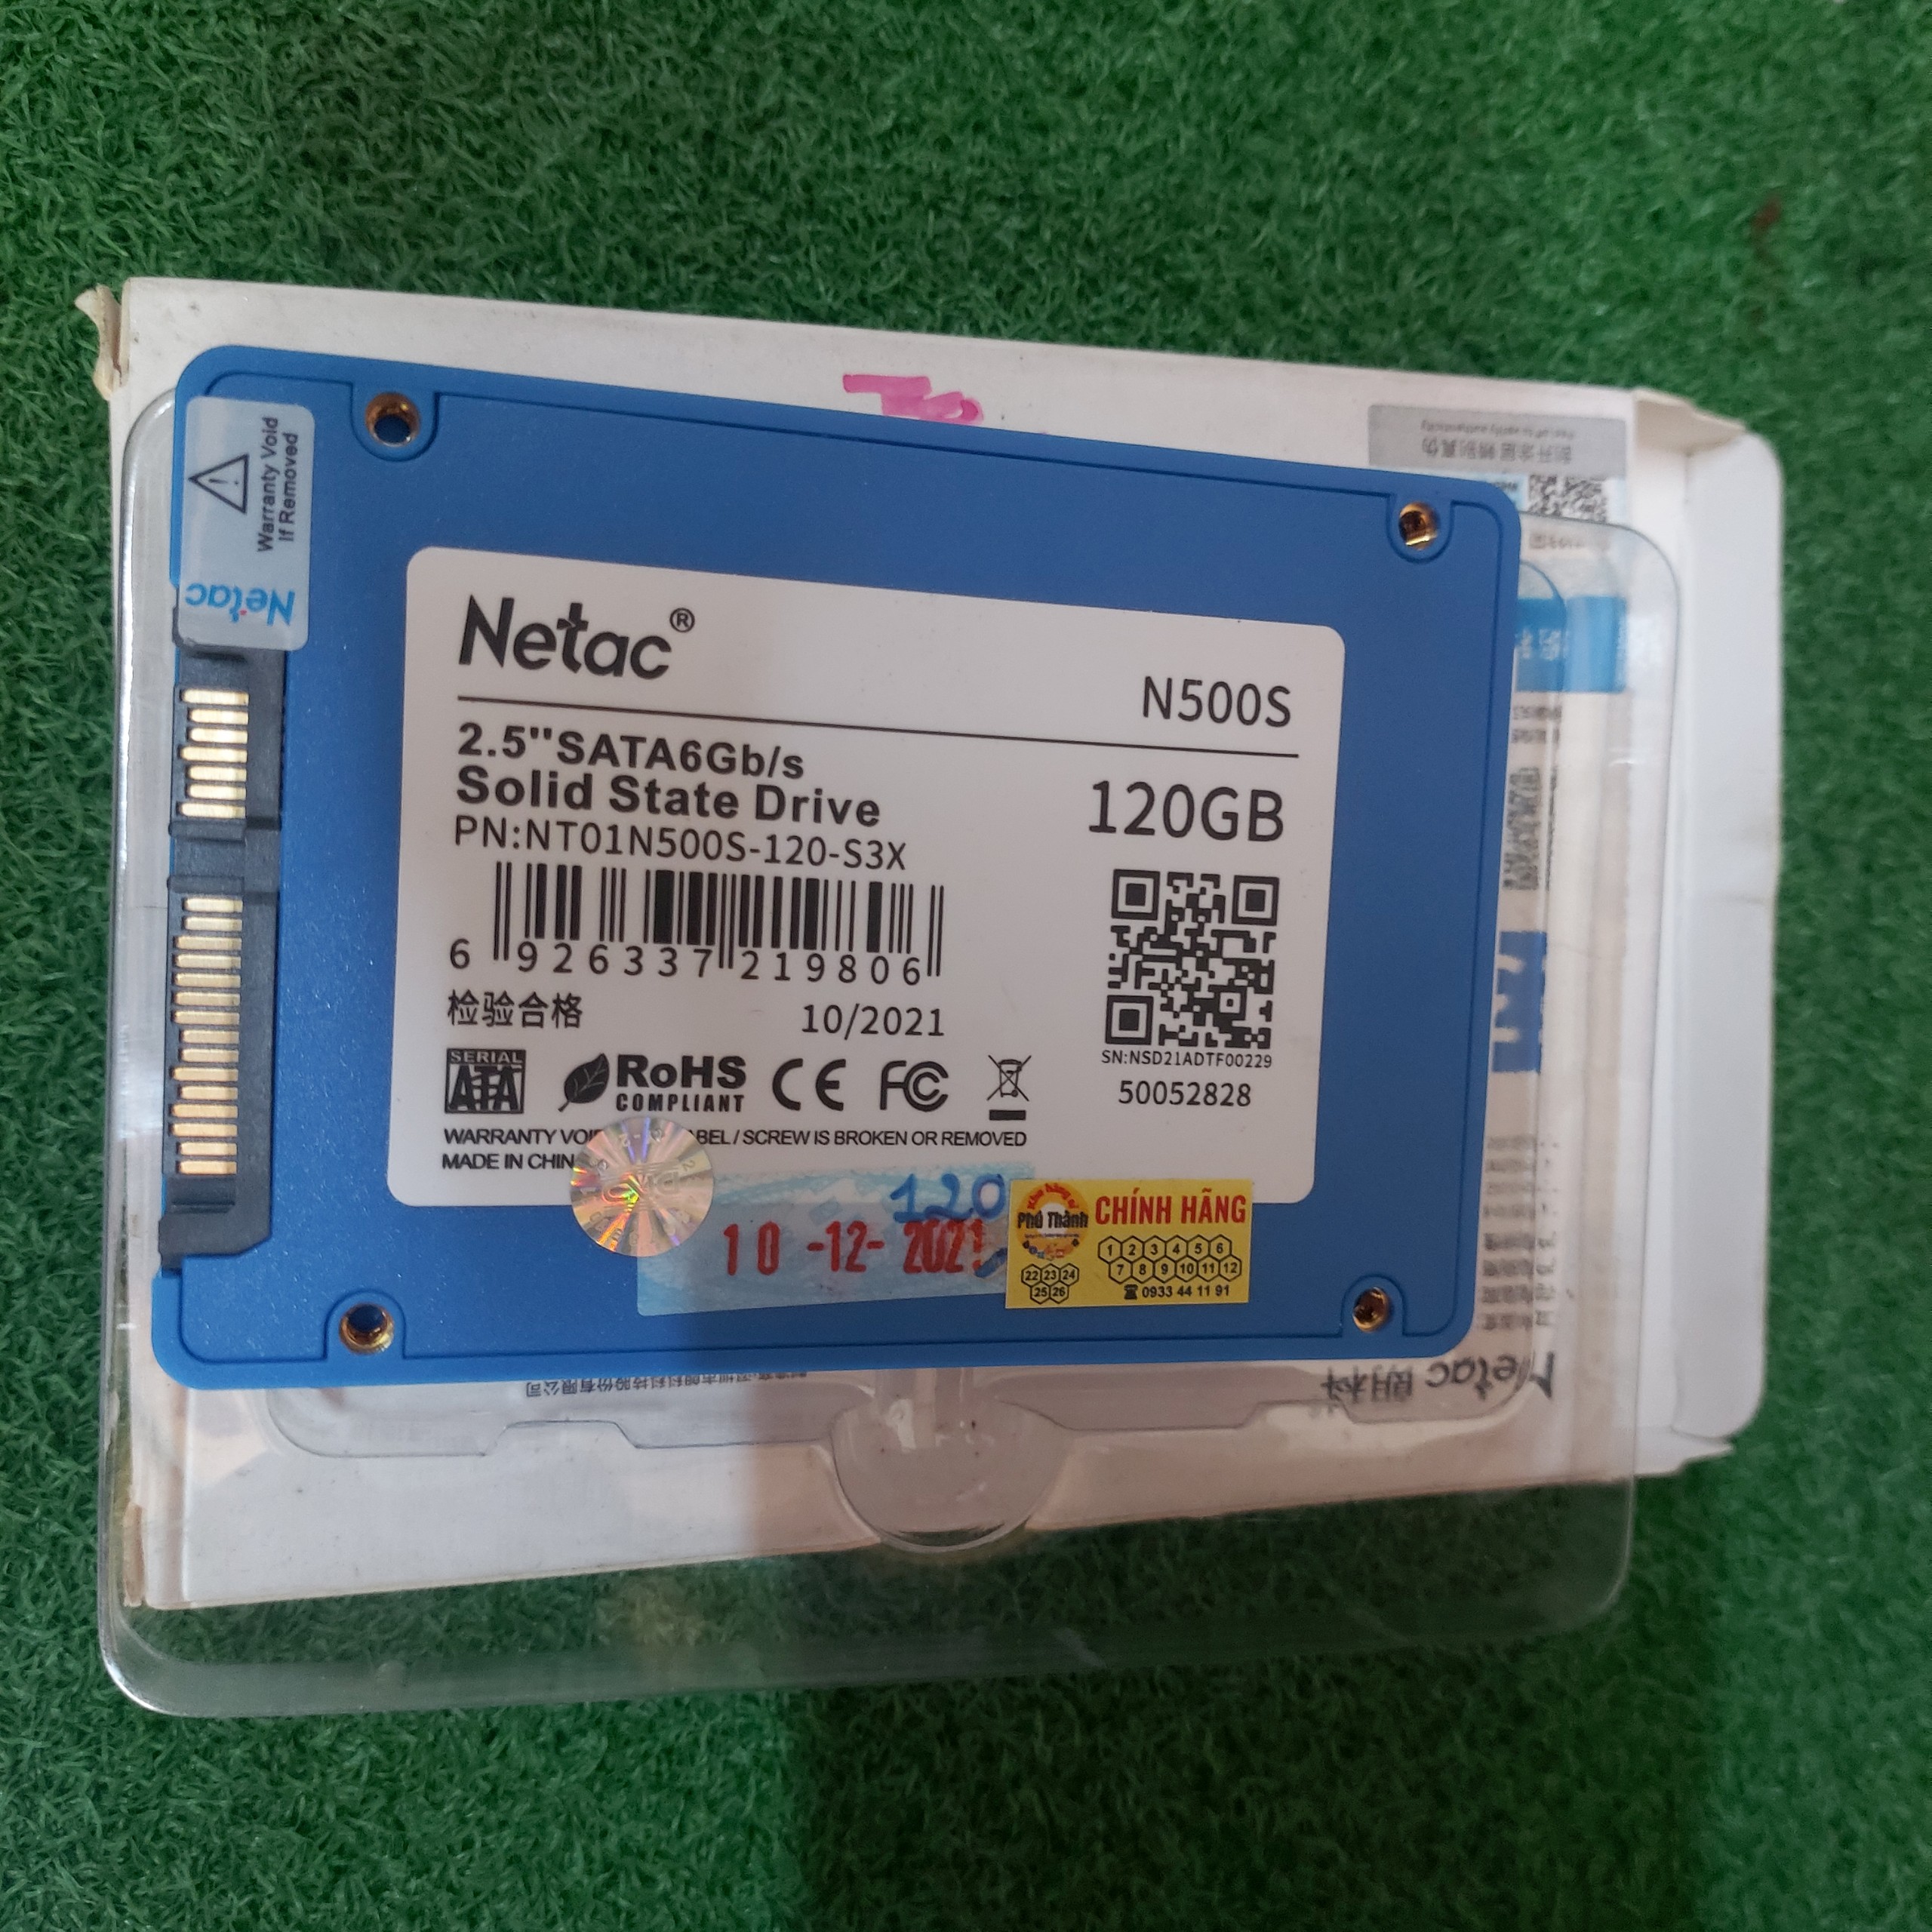 Ổ cứng SSD 120GB Netac có win 10 2.5 Sata 6Gbs chính hãng mới bảo hành 3